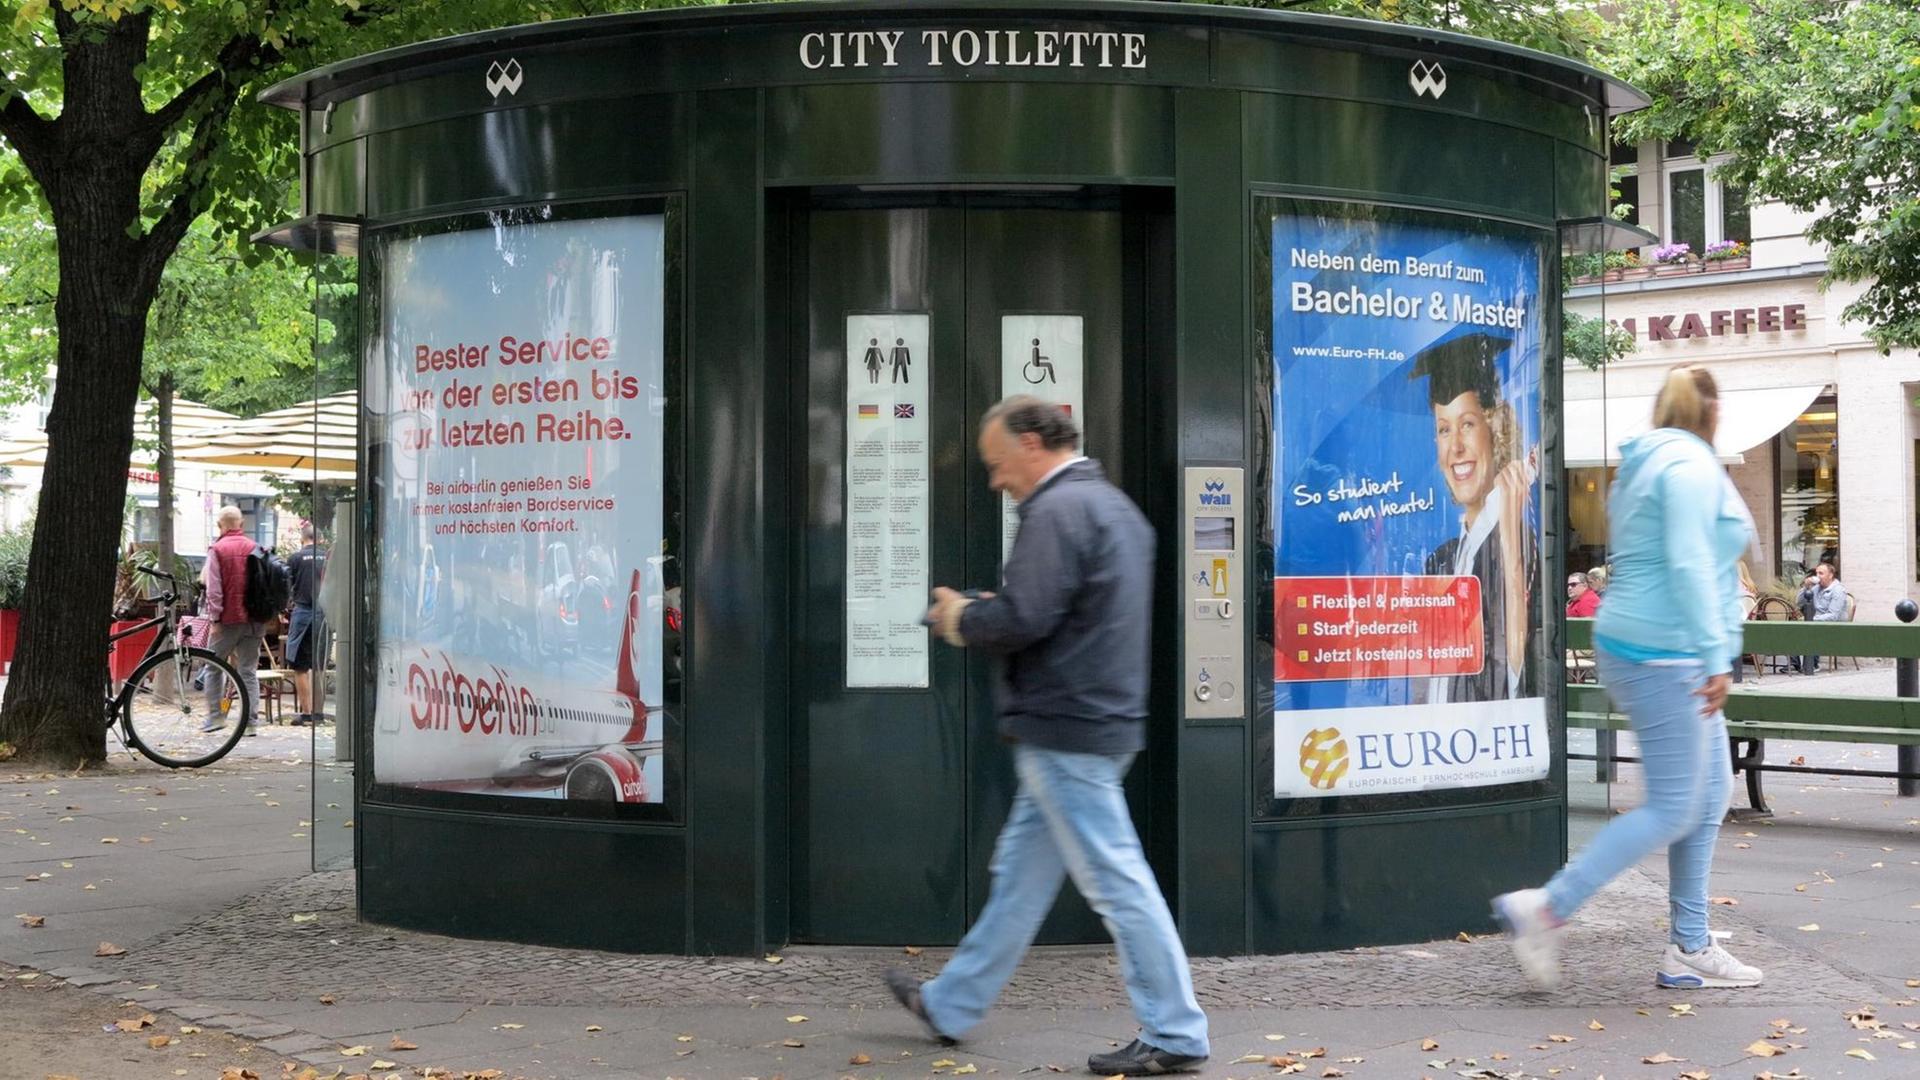 Eine moderne öffentliche Toilette auf dem Kurfürstendamm in Berlin.